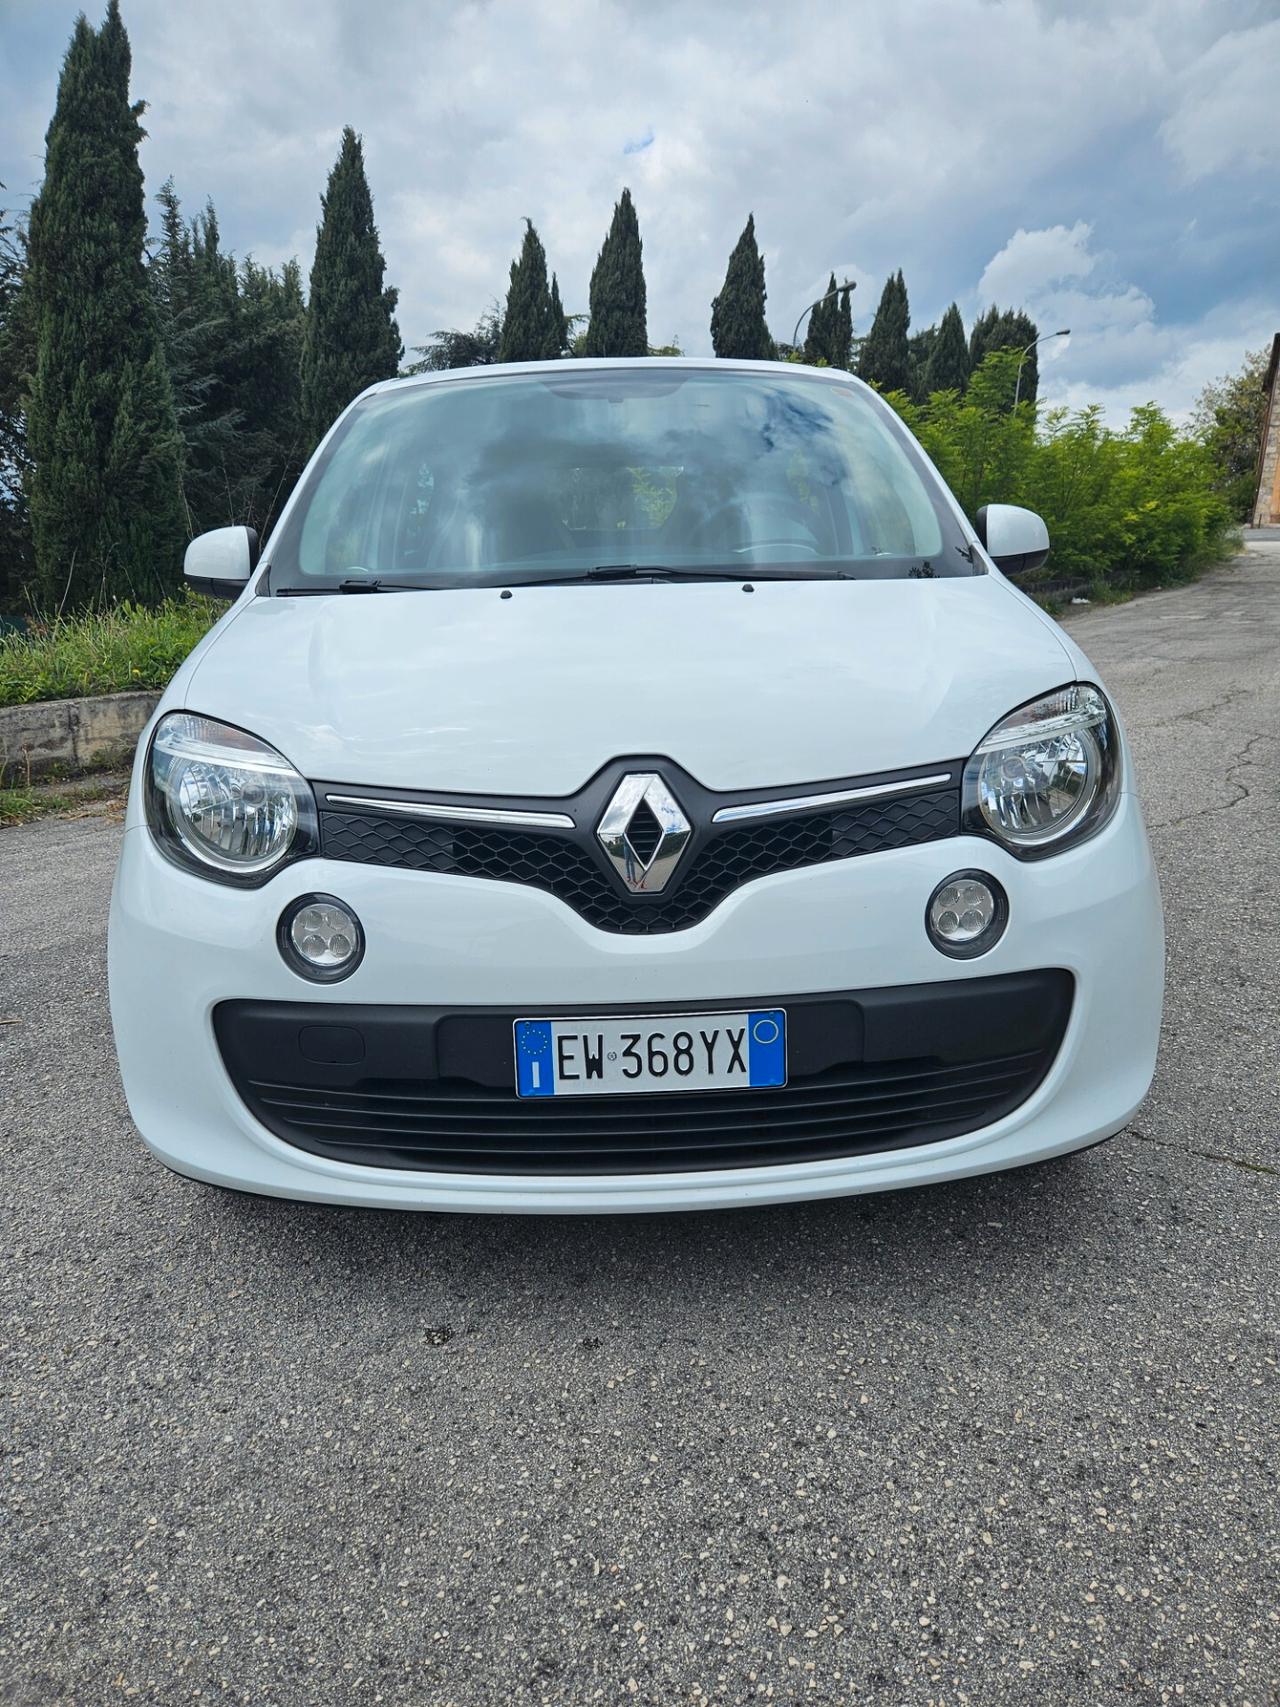 Renault Twingo 1.0 benzina